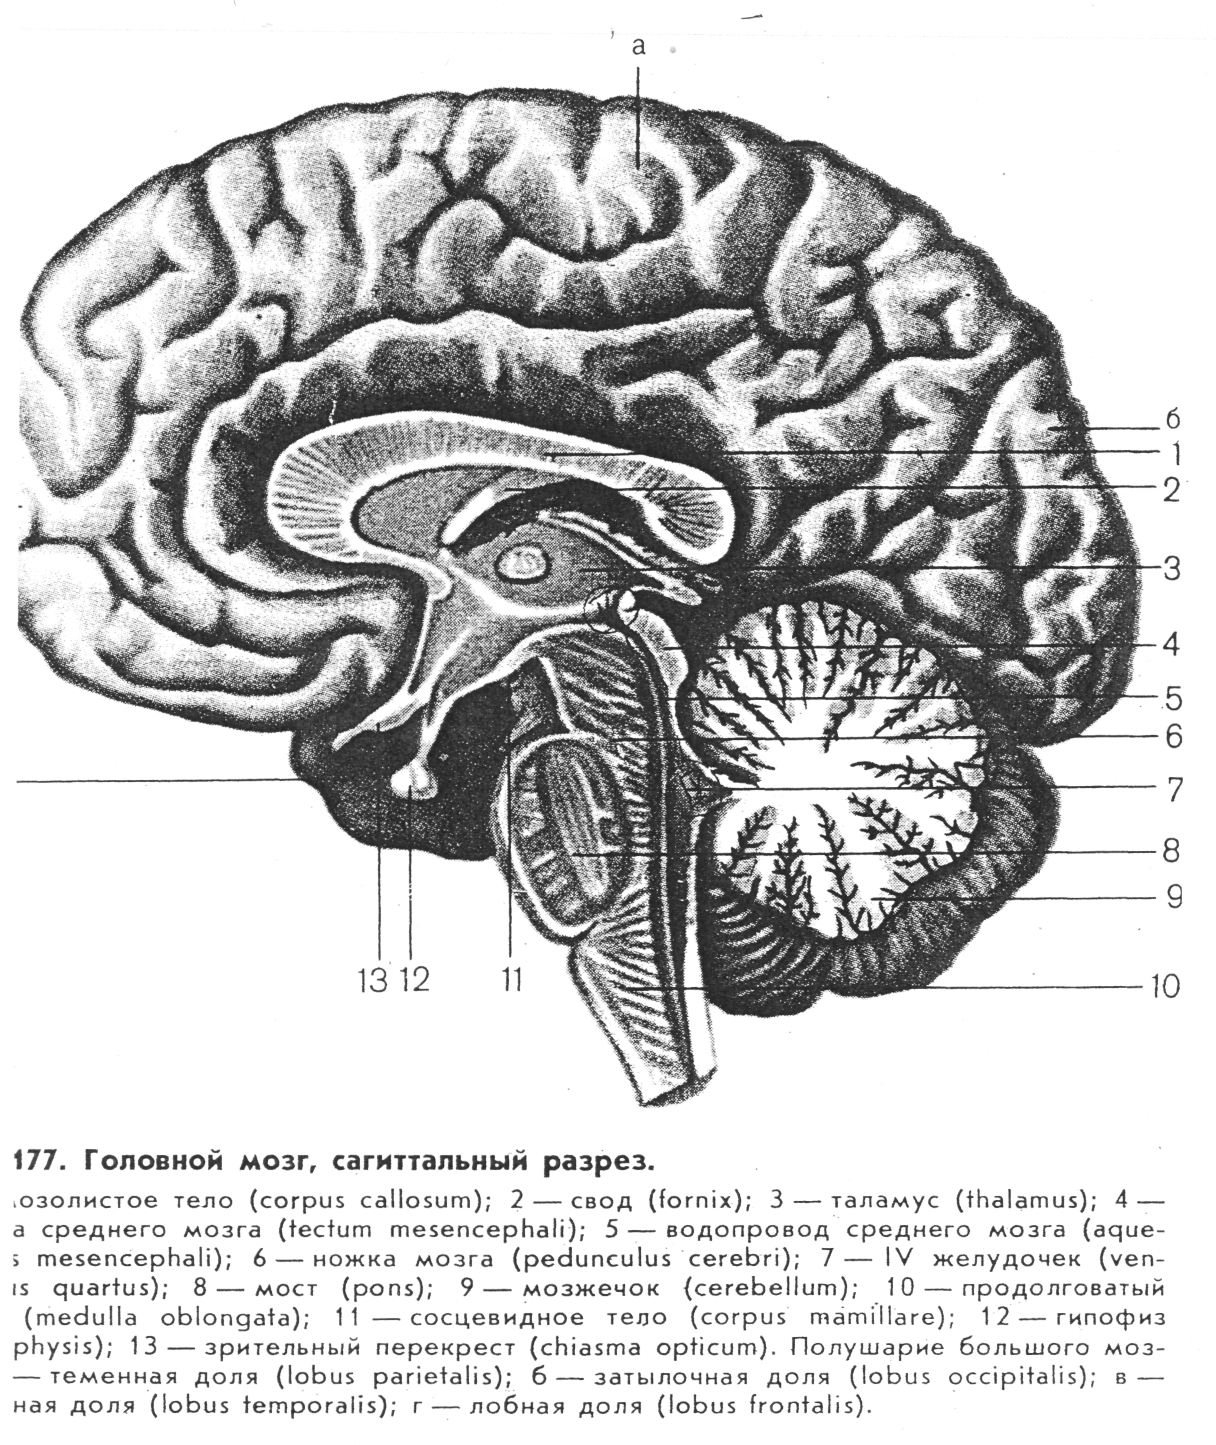 Латинское название мозга. Головной мозг Сагиттальный разрез атлас. Сагиттальный разрез головного мозга средний мозг. Промежуточный мозг Сагиттальный разрез головного мозга. Строение головного мозга Сагиттальный разрез.